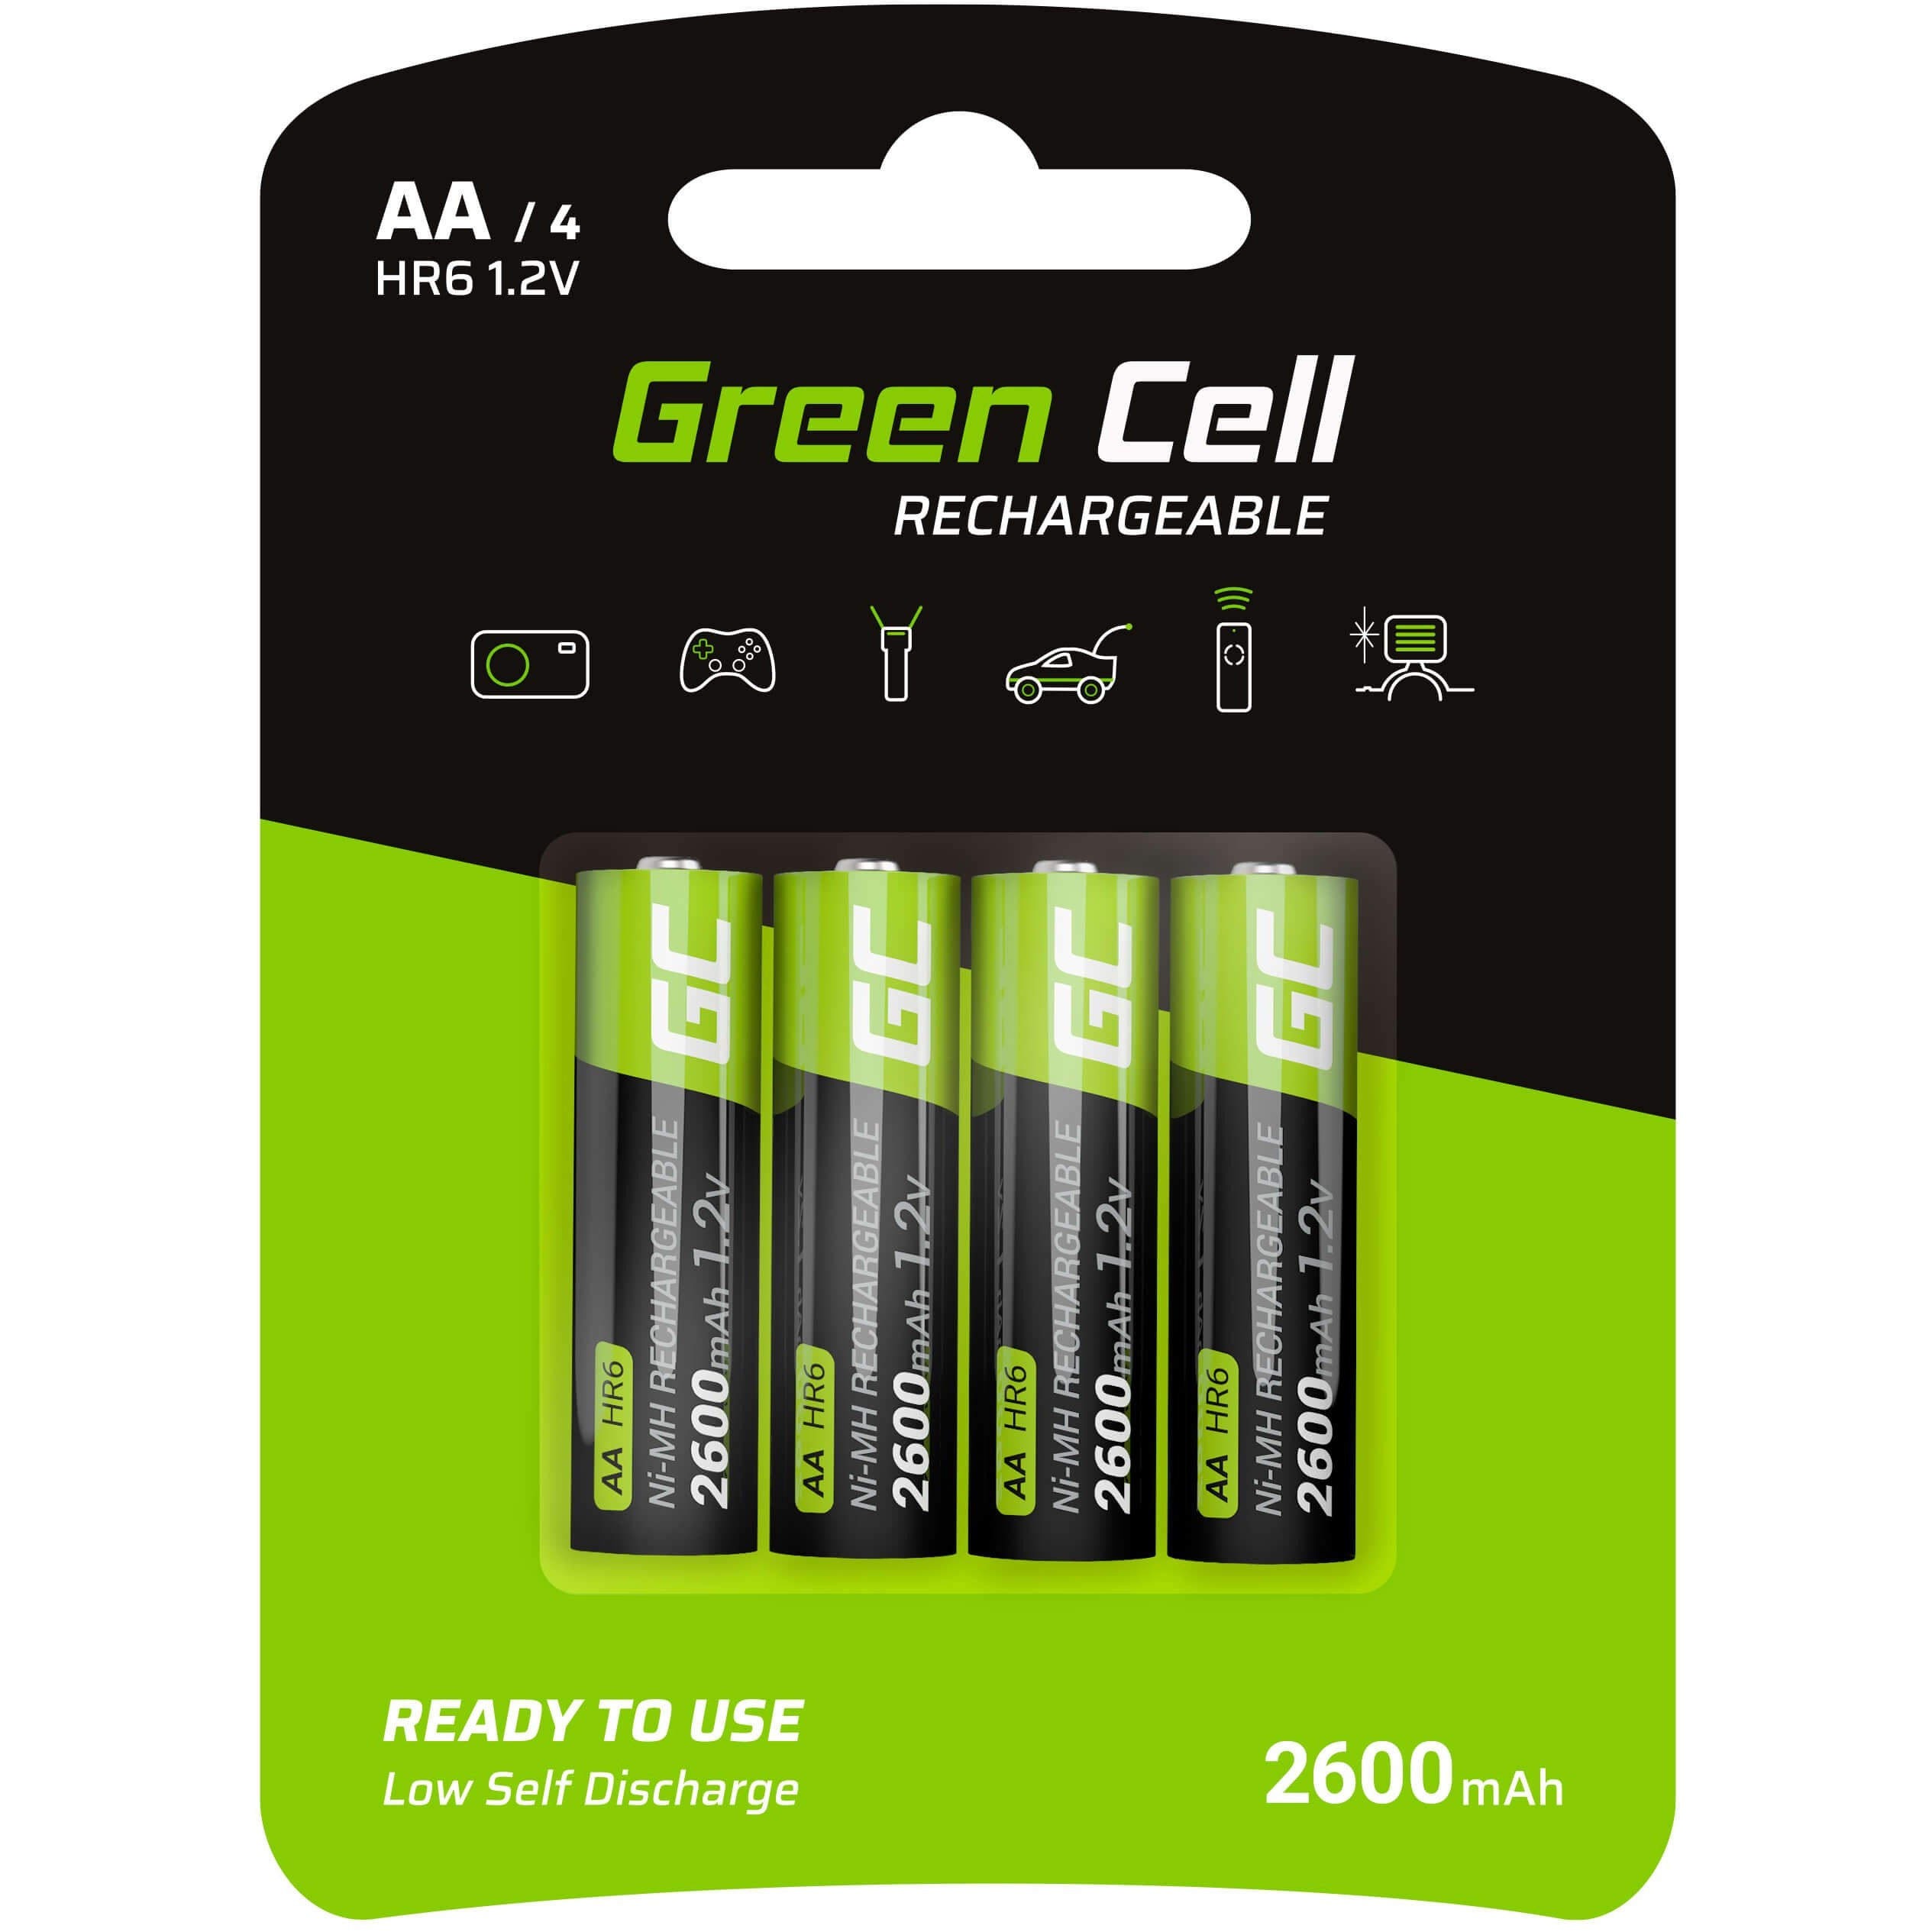 Green Cell GR01 household battery